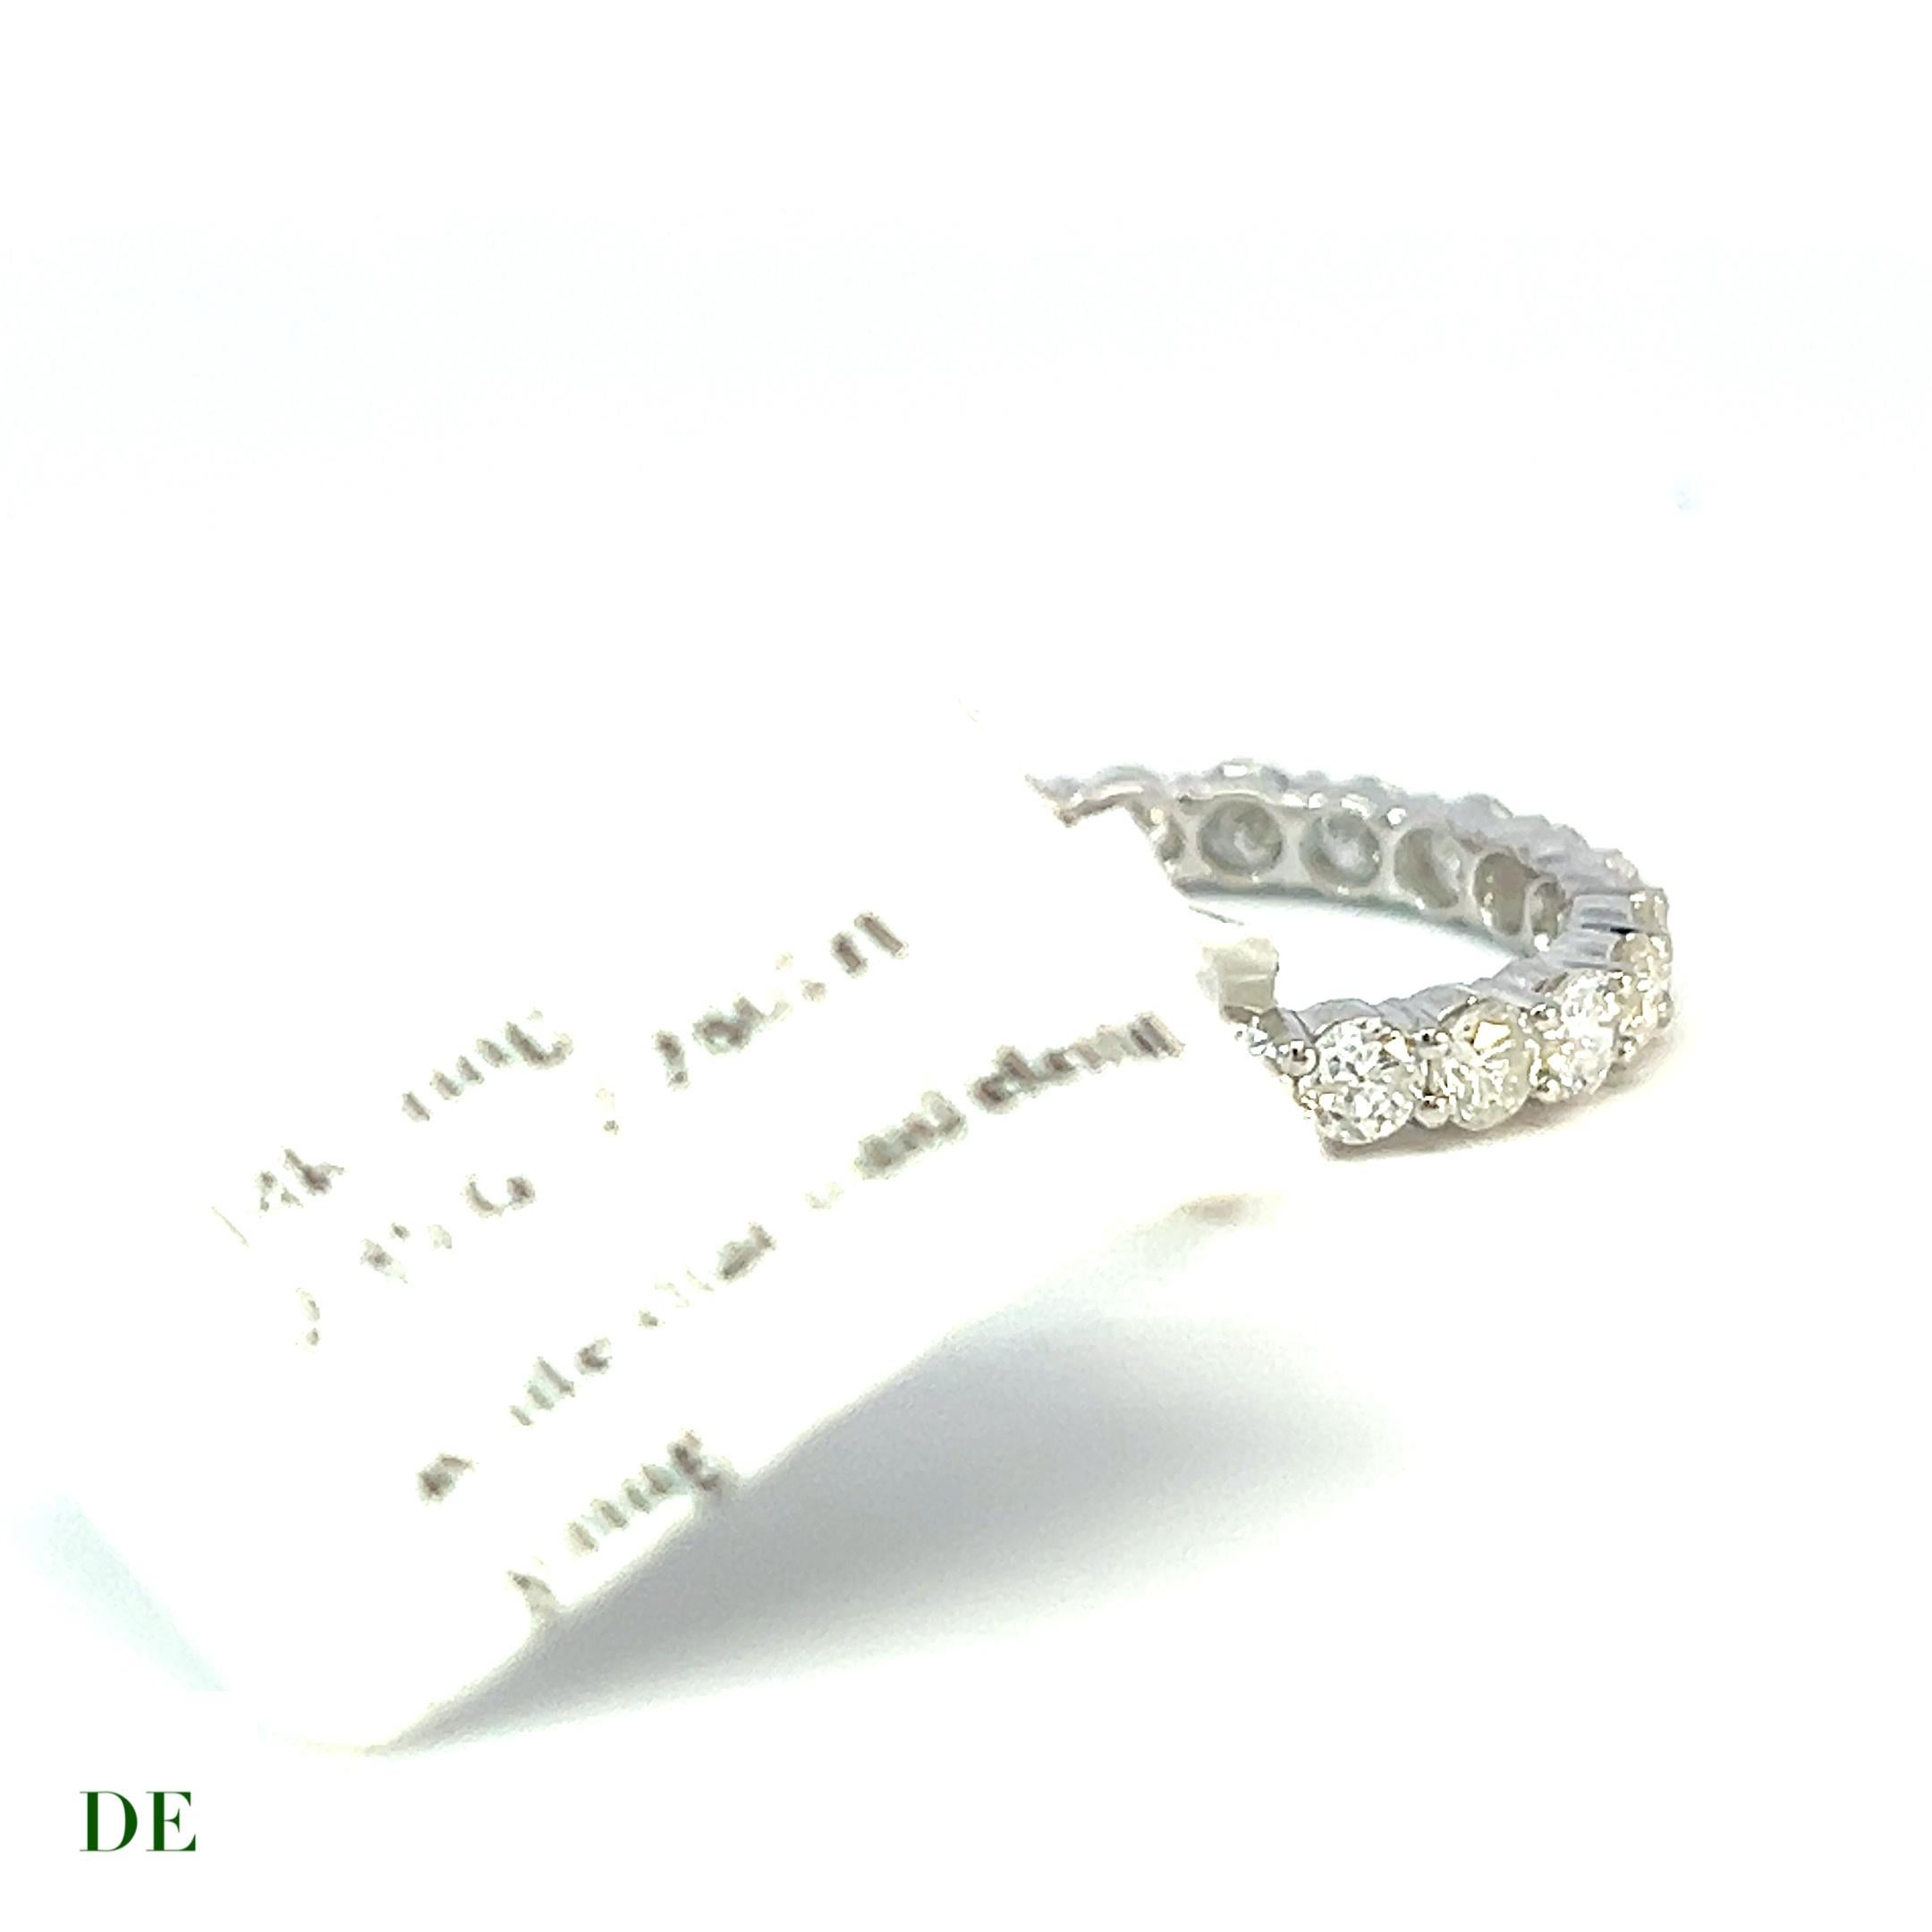 Classic 14k Gold 2.286 Carat Elegance Band Diamond Ring

Voici la bague classique en or 14k de 2,286 carats pour un anneau d'éternité en diamant. Cette bague extraordinaire est une véritable incarnation du luxe, de l'élégance et de la beauté